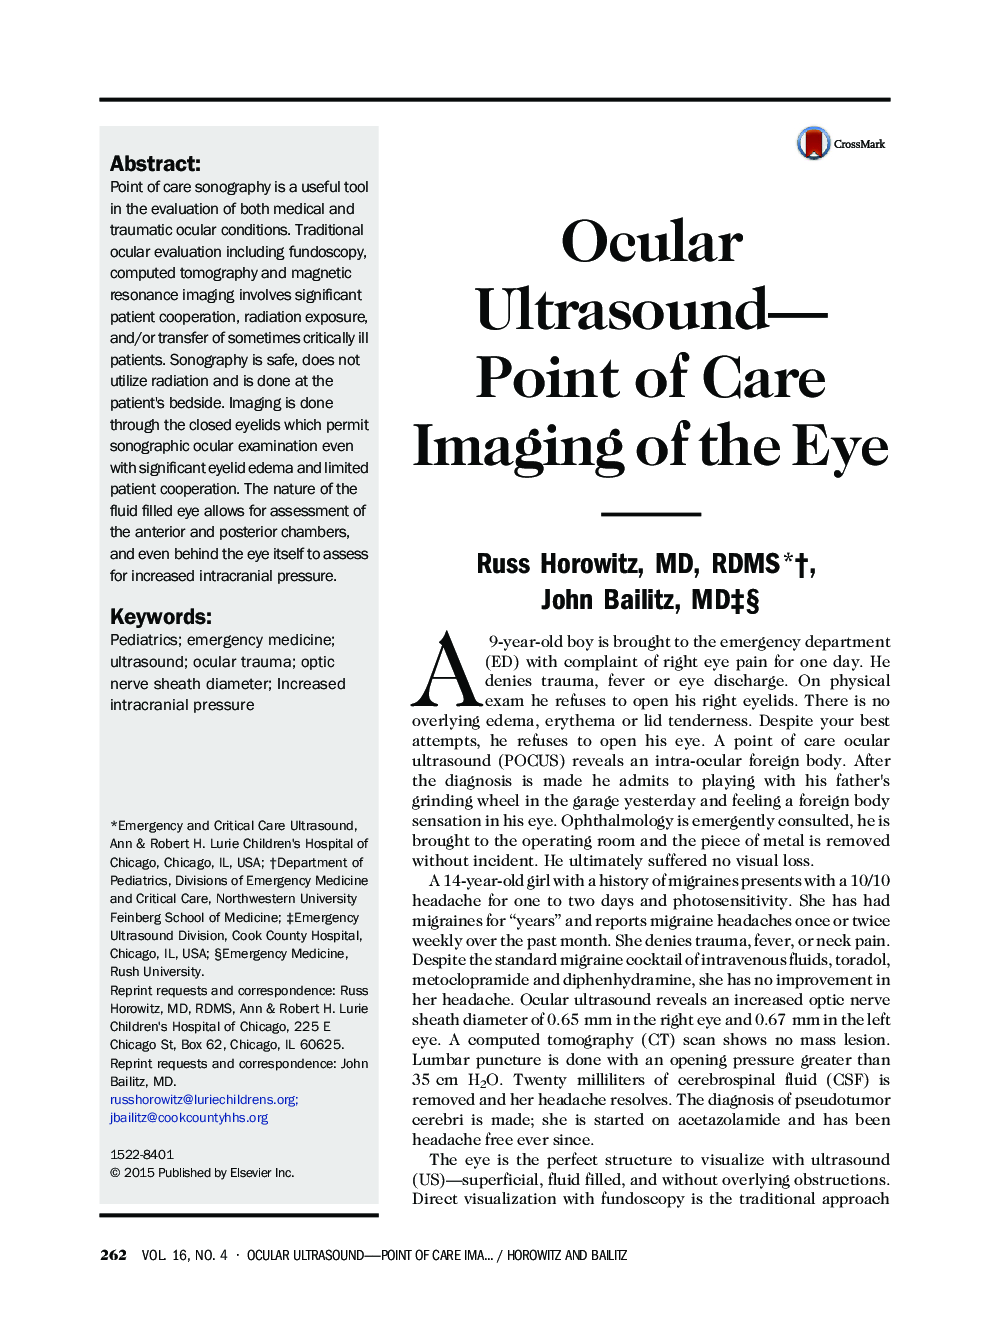 سونوگرافی چشمی؛ نقطه مراقبت تصویربرداری از چشم